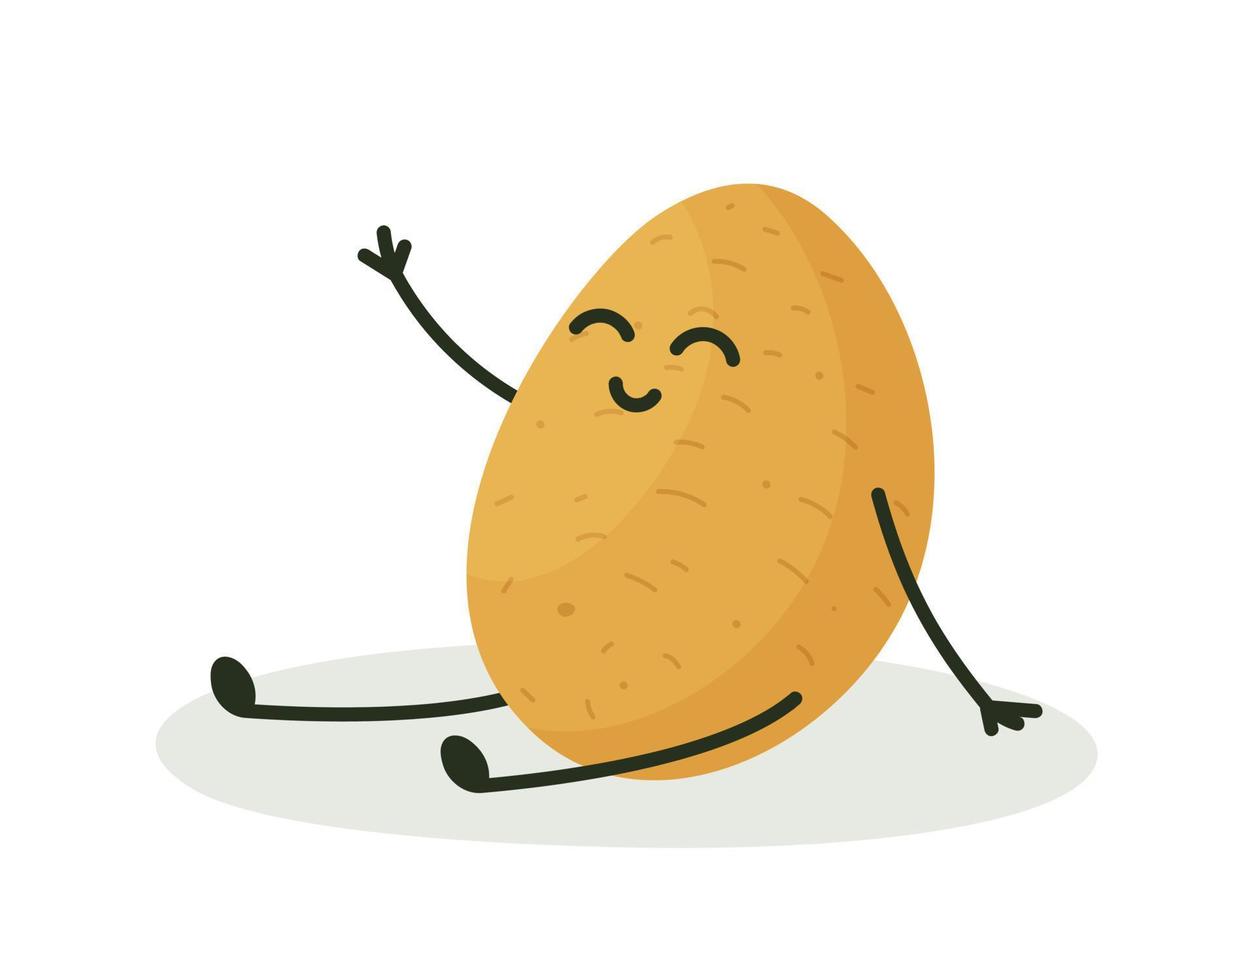 zuiver aardappel met handen, voeten en gezicht. vector illustratie van aardappel karakter. een mooi aardappel knol van groot maat.